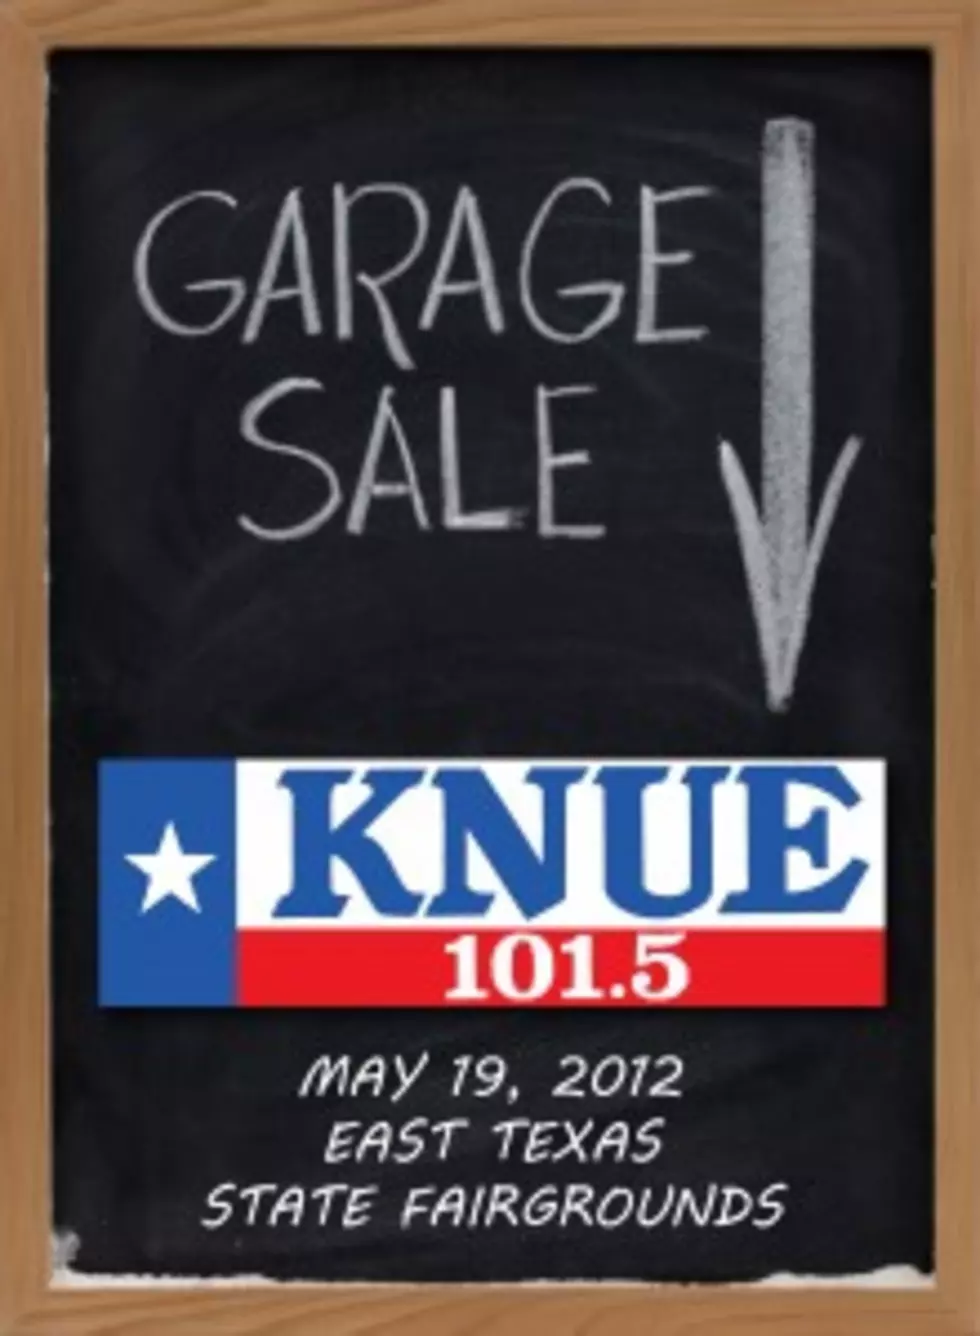 The KNUE Garage Sale